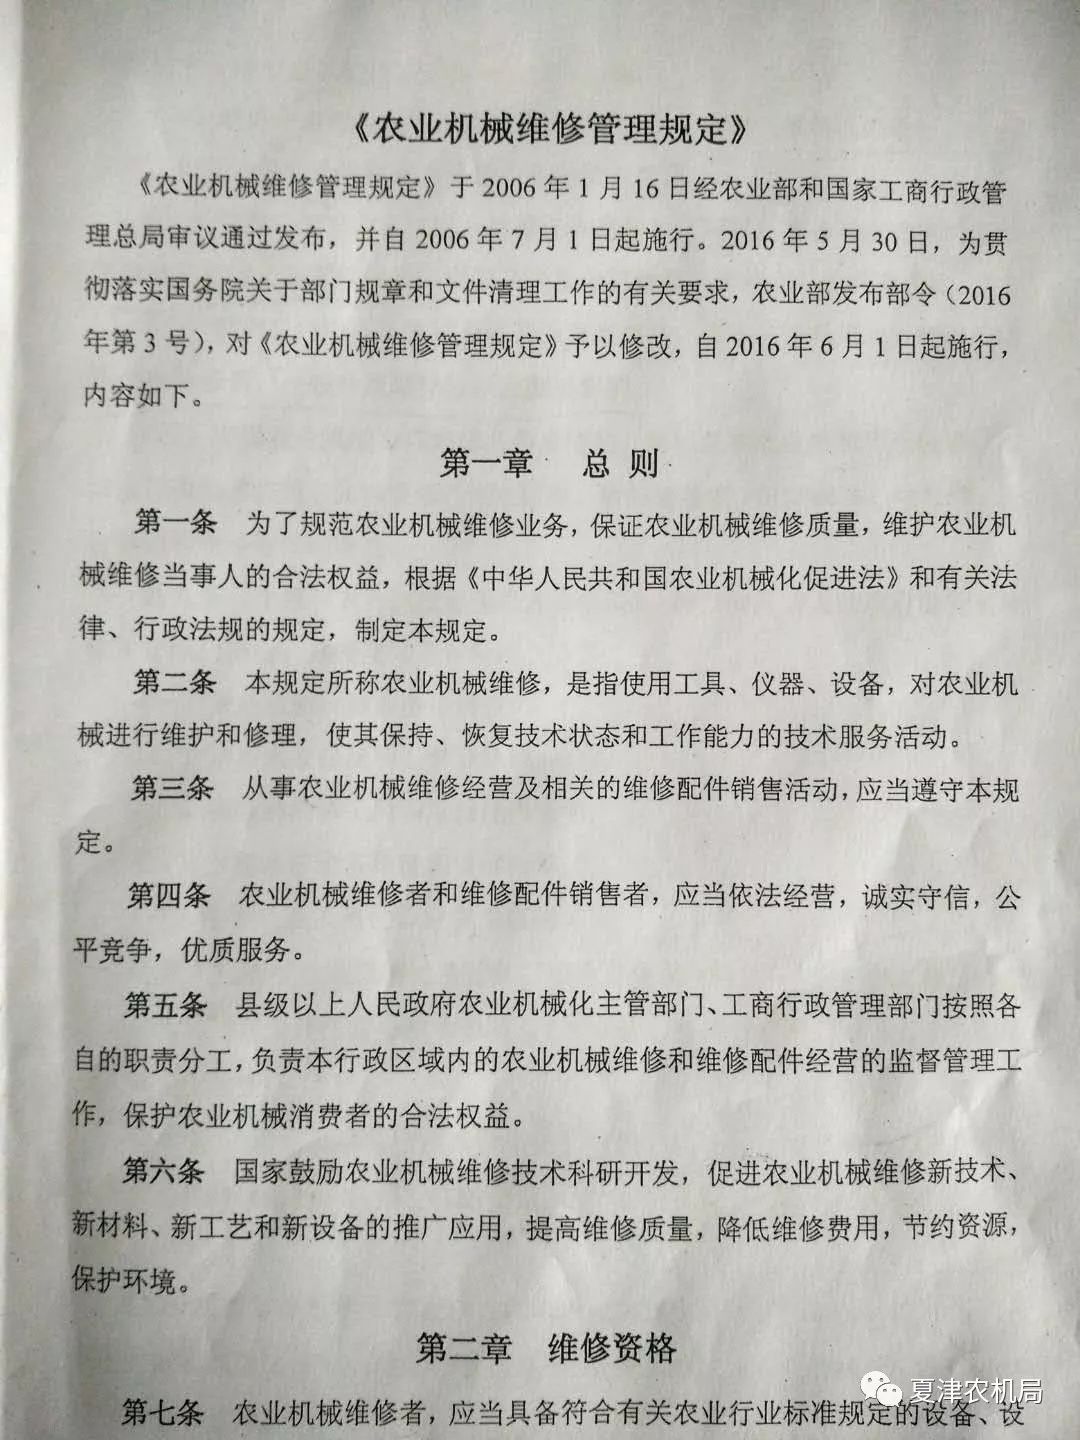 夏津县农机局召开农机维修网点问题整改调度会